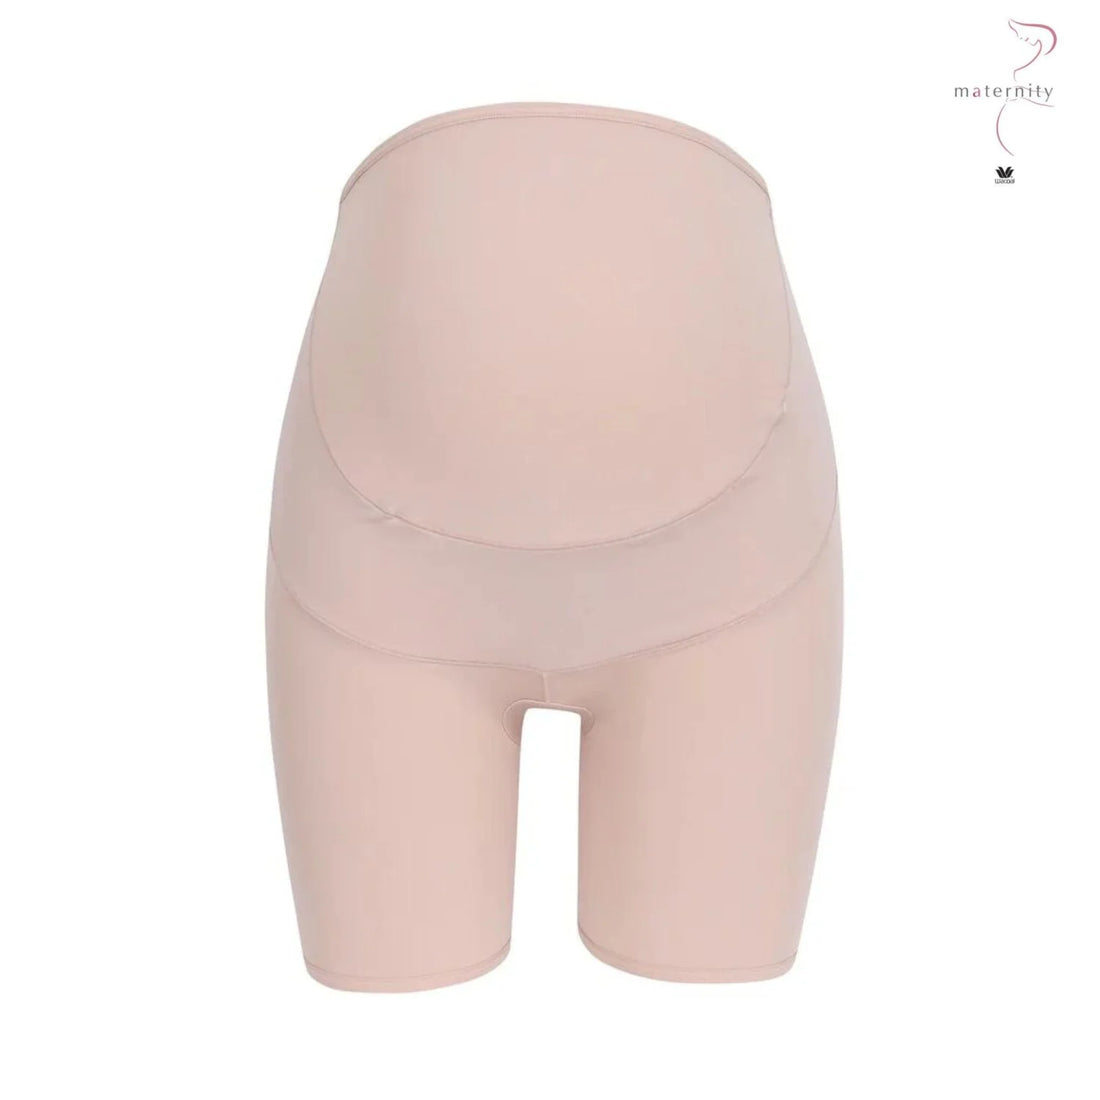 Wacoal Maternity Panty Full Body Shaper Model WM6180 Beige (BE)